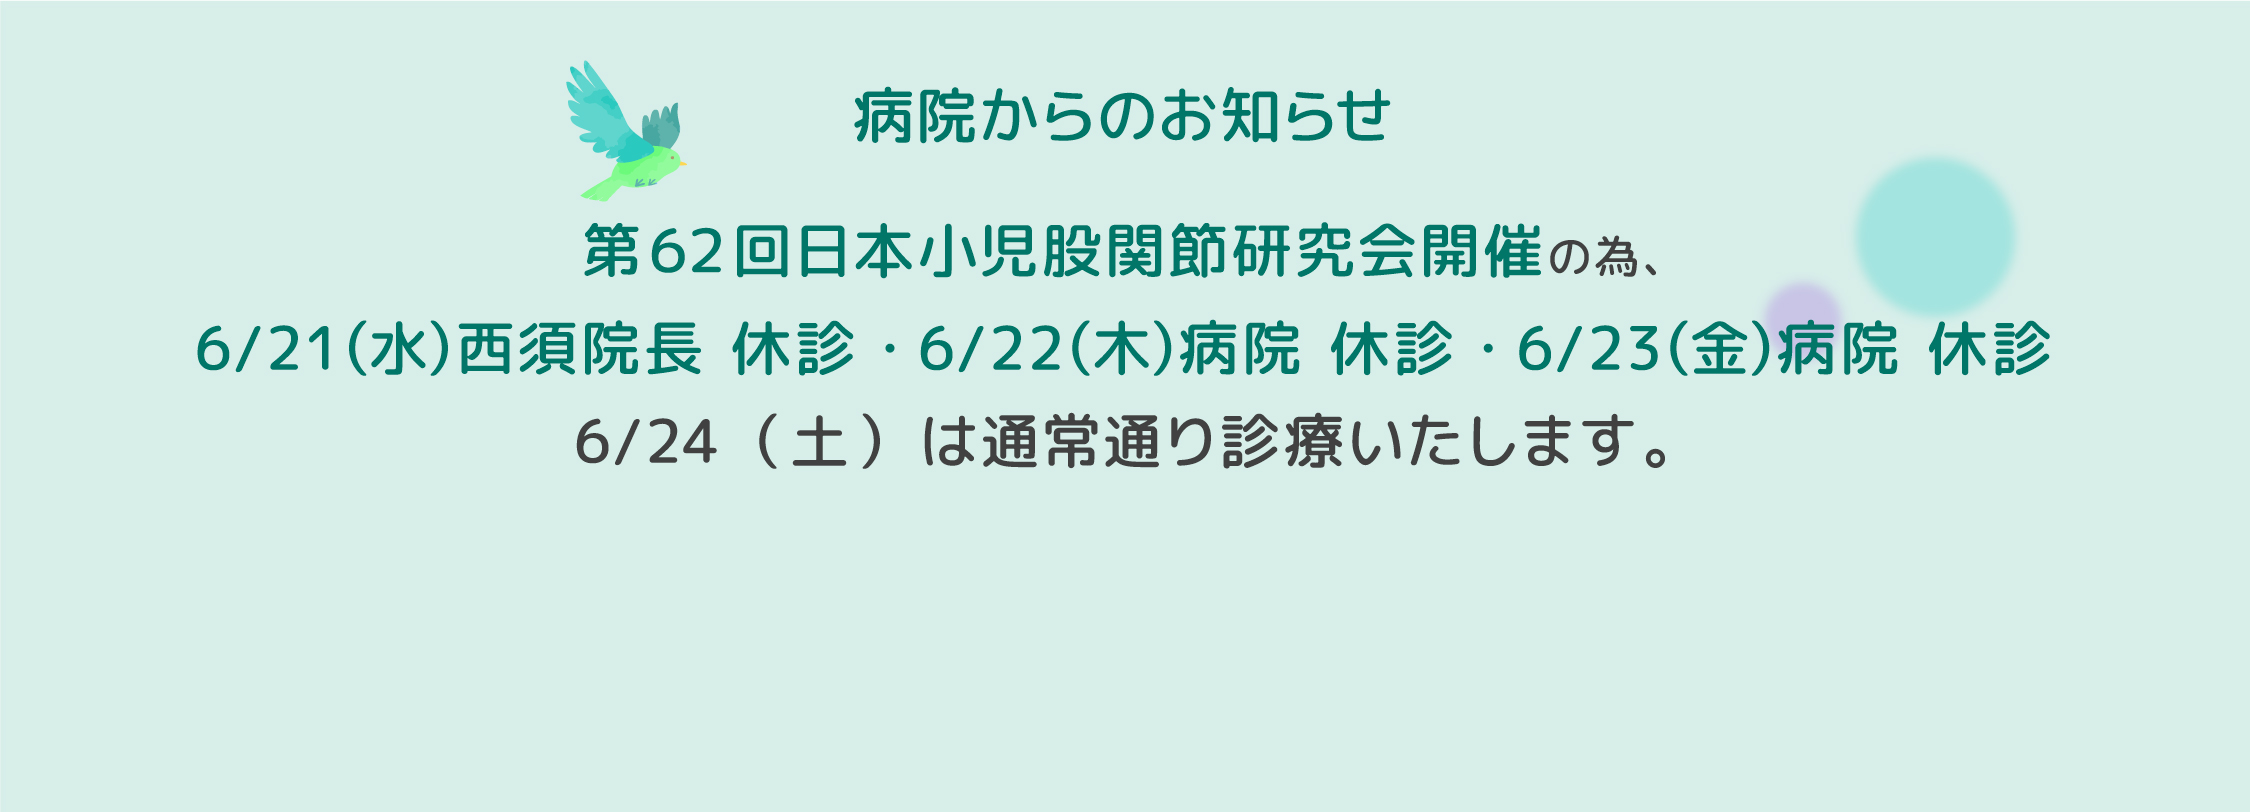 第62回日本小児股関節研究会開催の為、6/21（水）西須院長 休診・6/22（木）病院 休診・6/23（金）病院 休診いたします。6/24（土）は通常通り診療いたします。